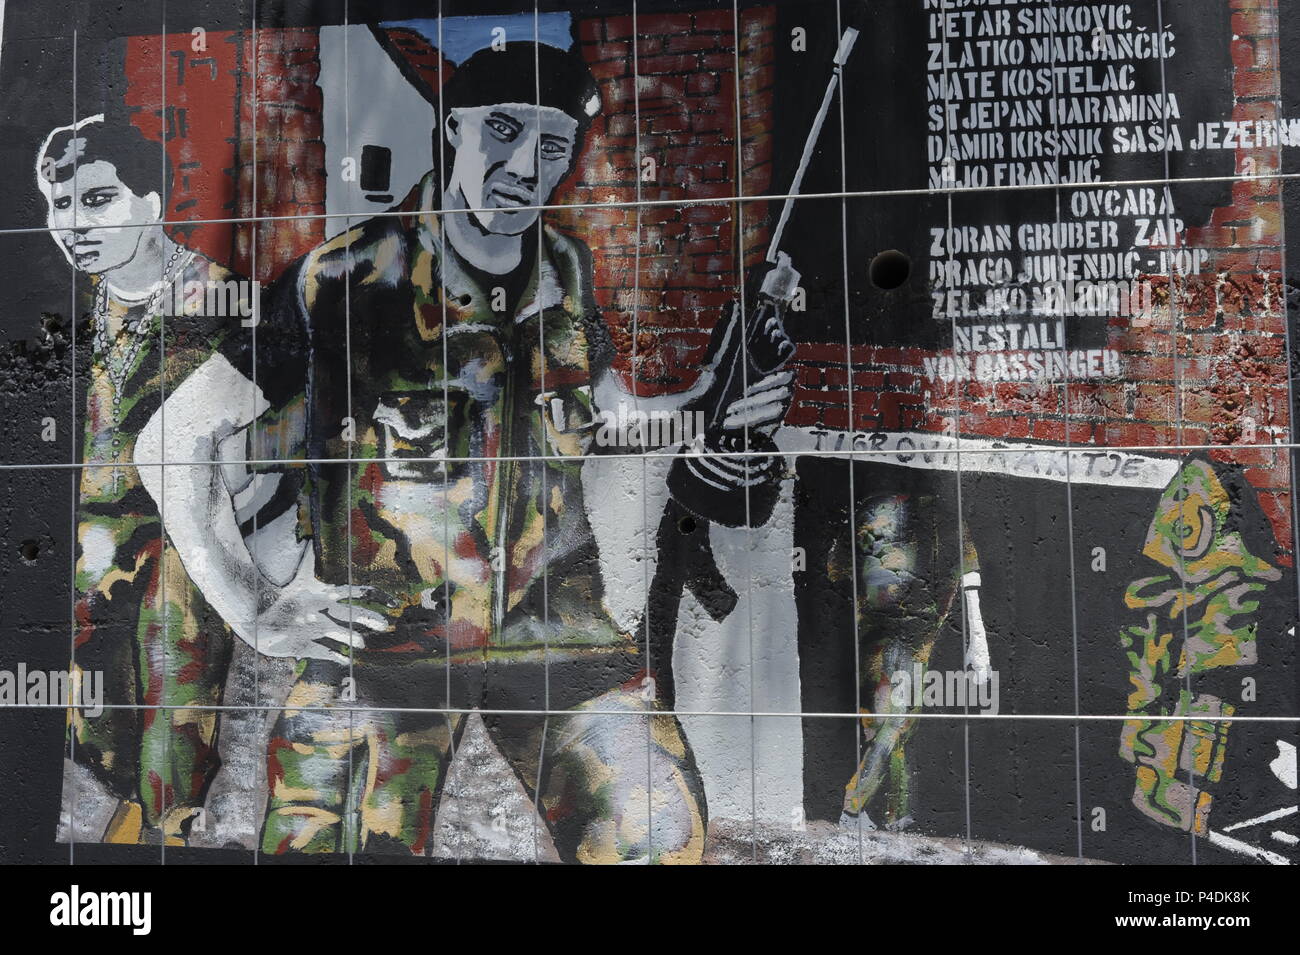 Graffitis Denkmal der Helden des Krieges Bürgerkrieg in Jugoslawien Jugoslawien- krieg Vukovar Straße zu erinnern. Split, Kroatien Stockfoto